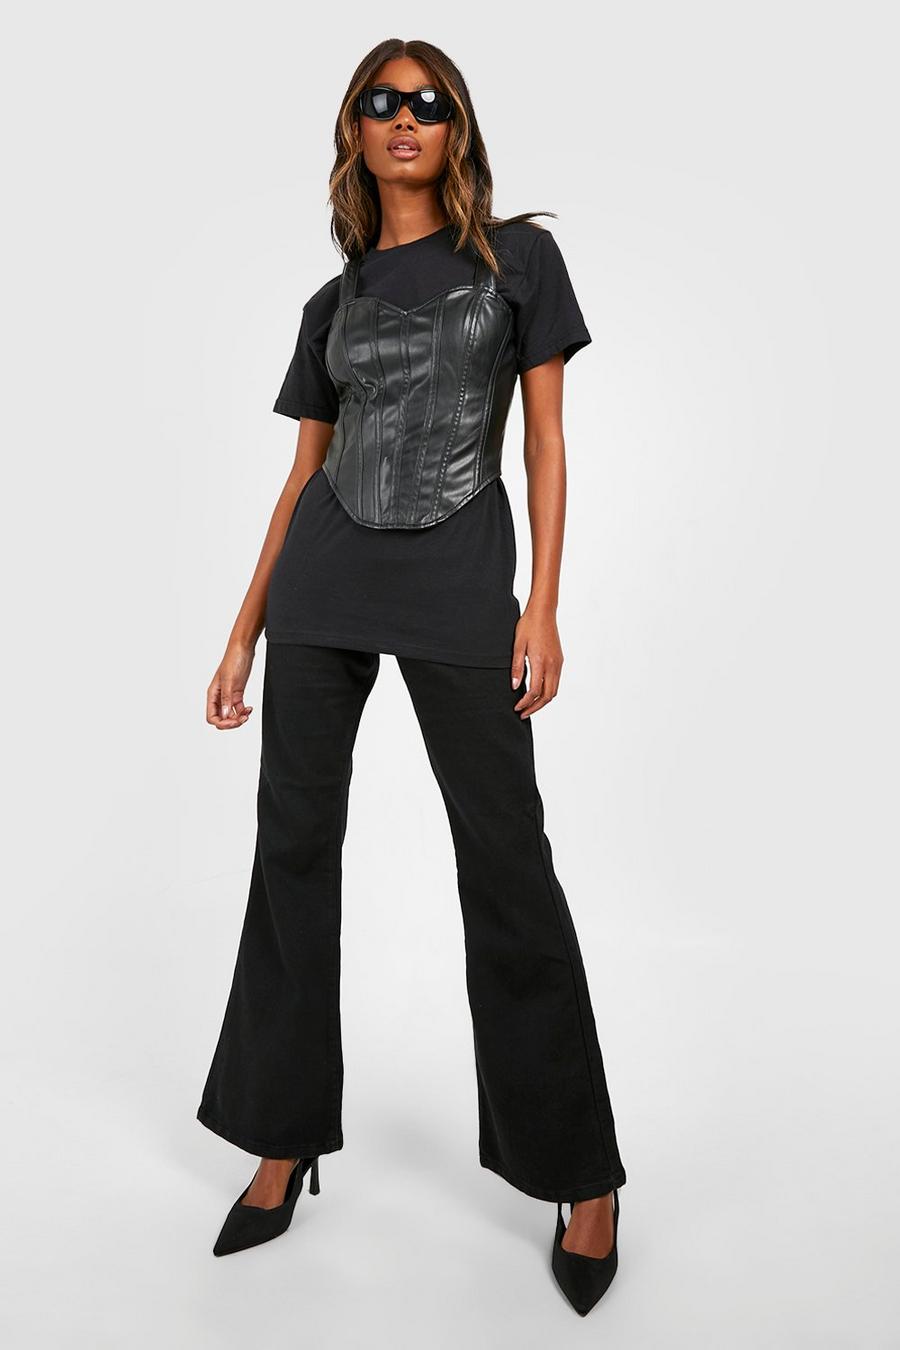 Black ג'ינס בייסיק high waist מתרחב בסגנון דיסקו